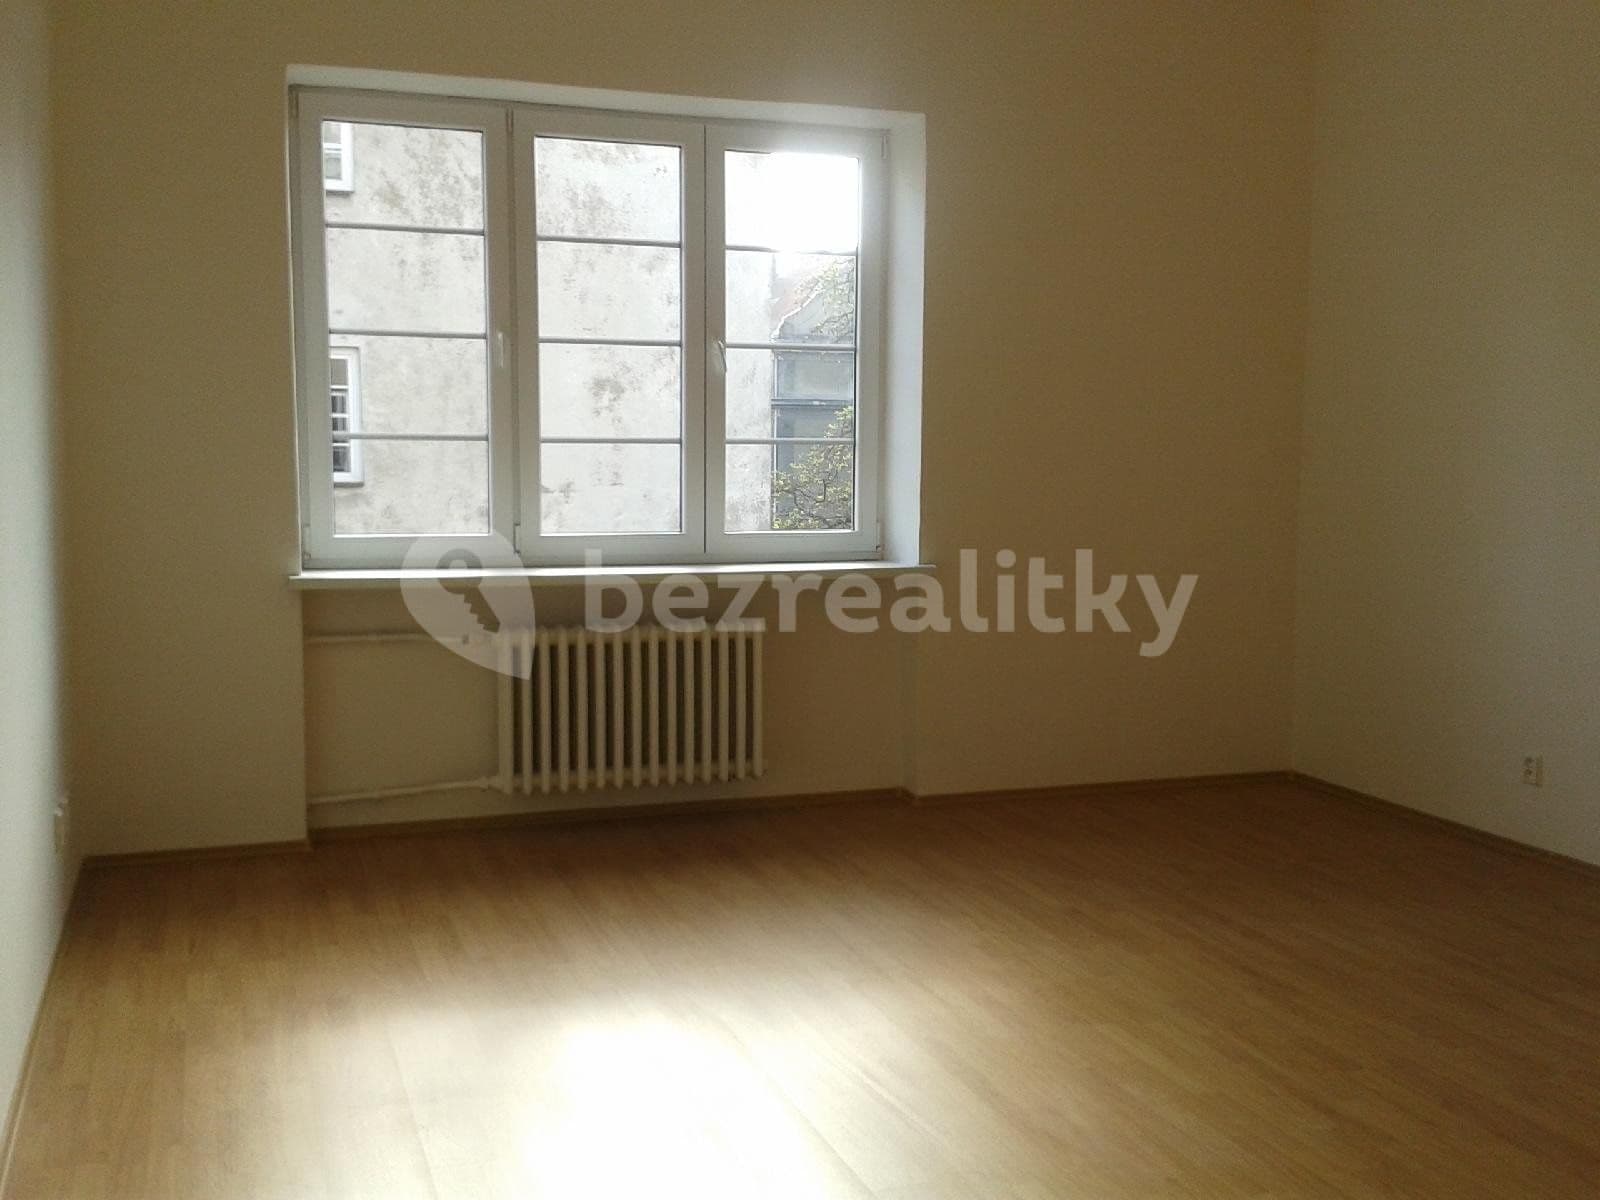 1 bedroom with open-plan kitchen flat to rent, 57 m², Hrušovská, Ostrava, Moravskoslezský Region